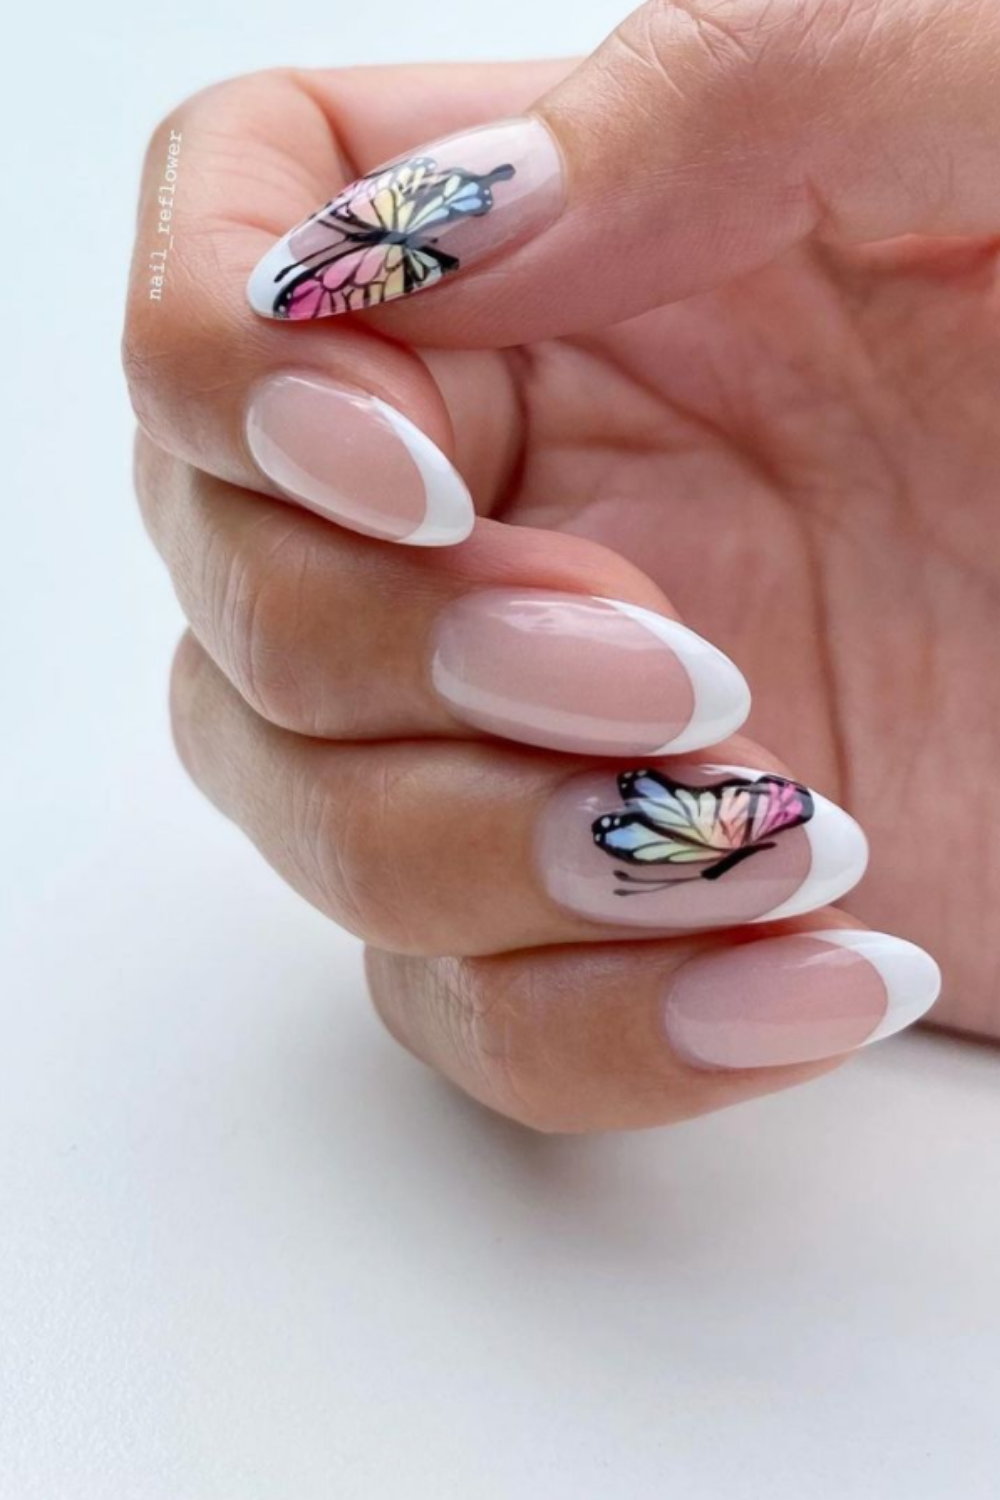 Cute summer nails designs